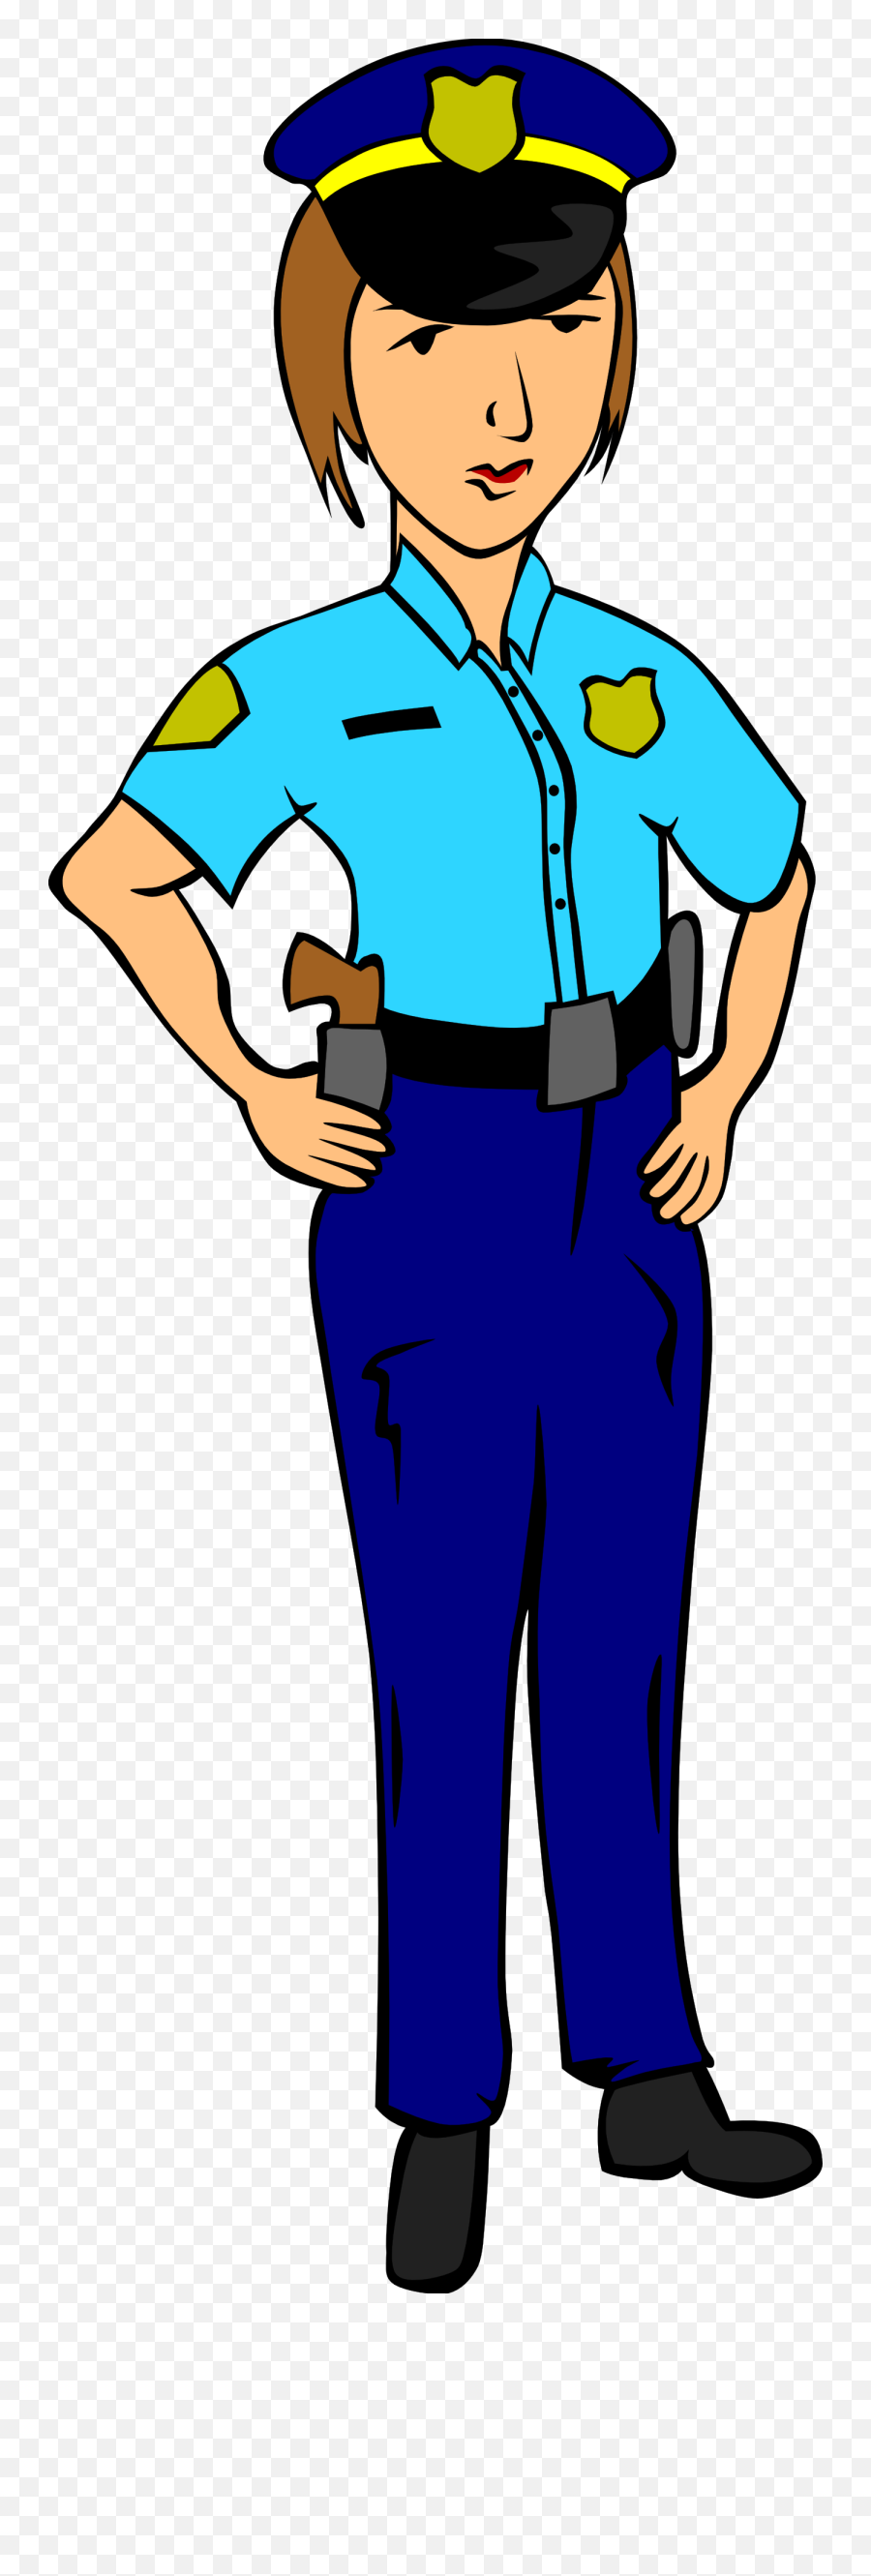 English Clipart Police Officer English Police Officer - Dibujo De Mujer Policia Emoji,Police Emoji